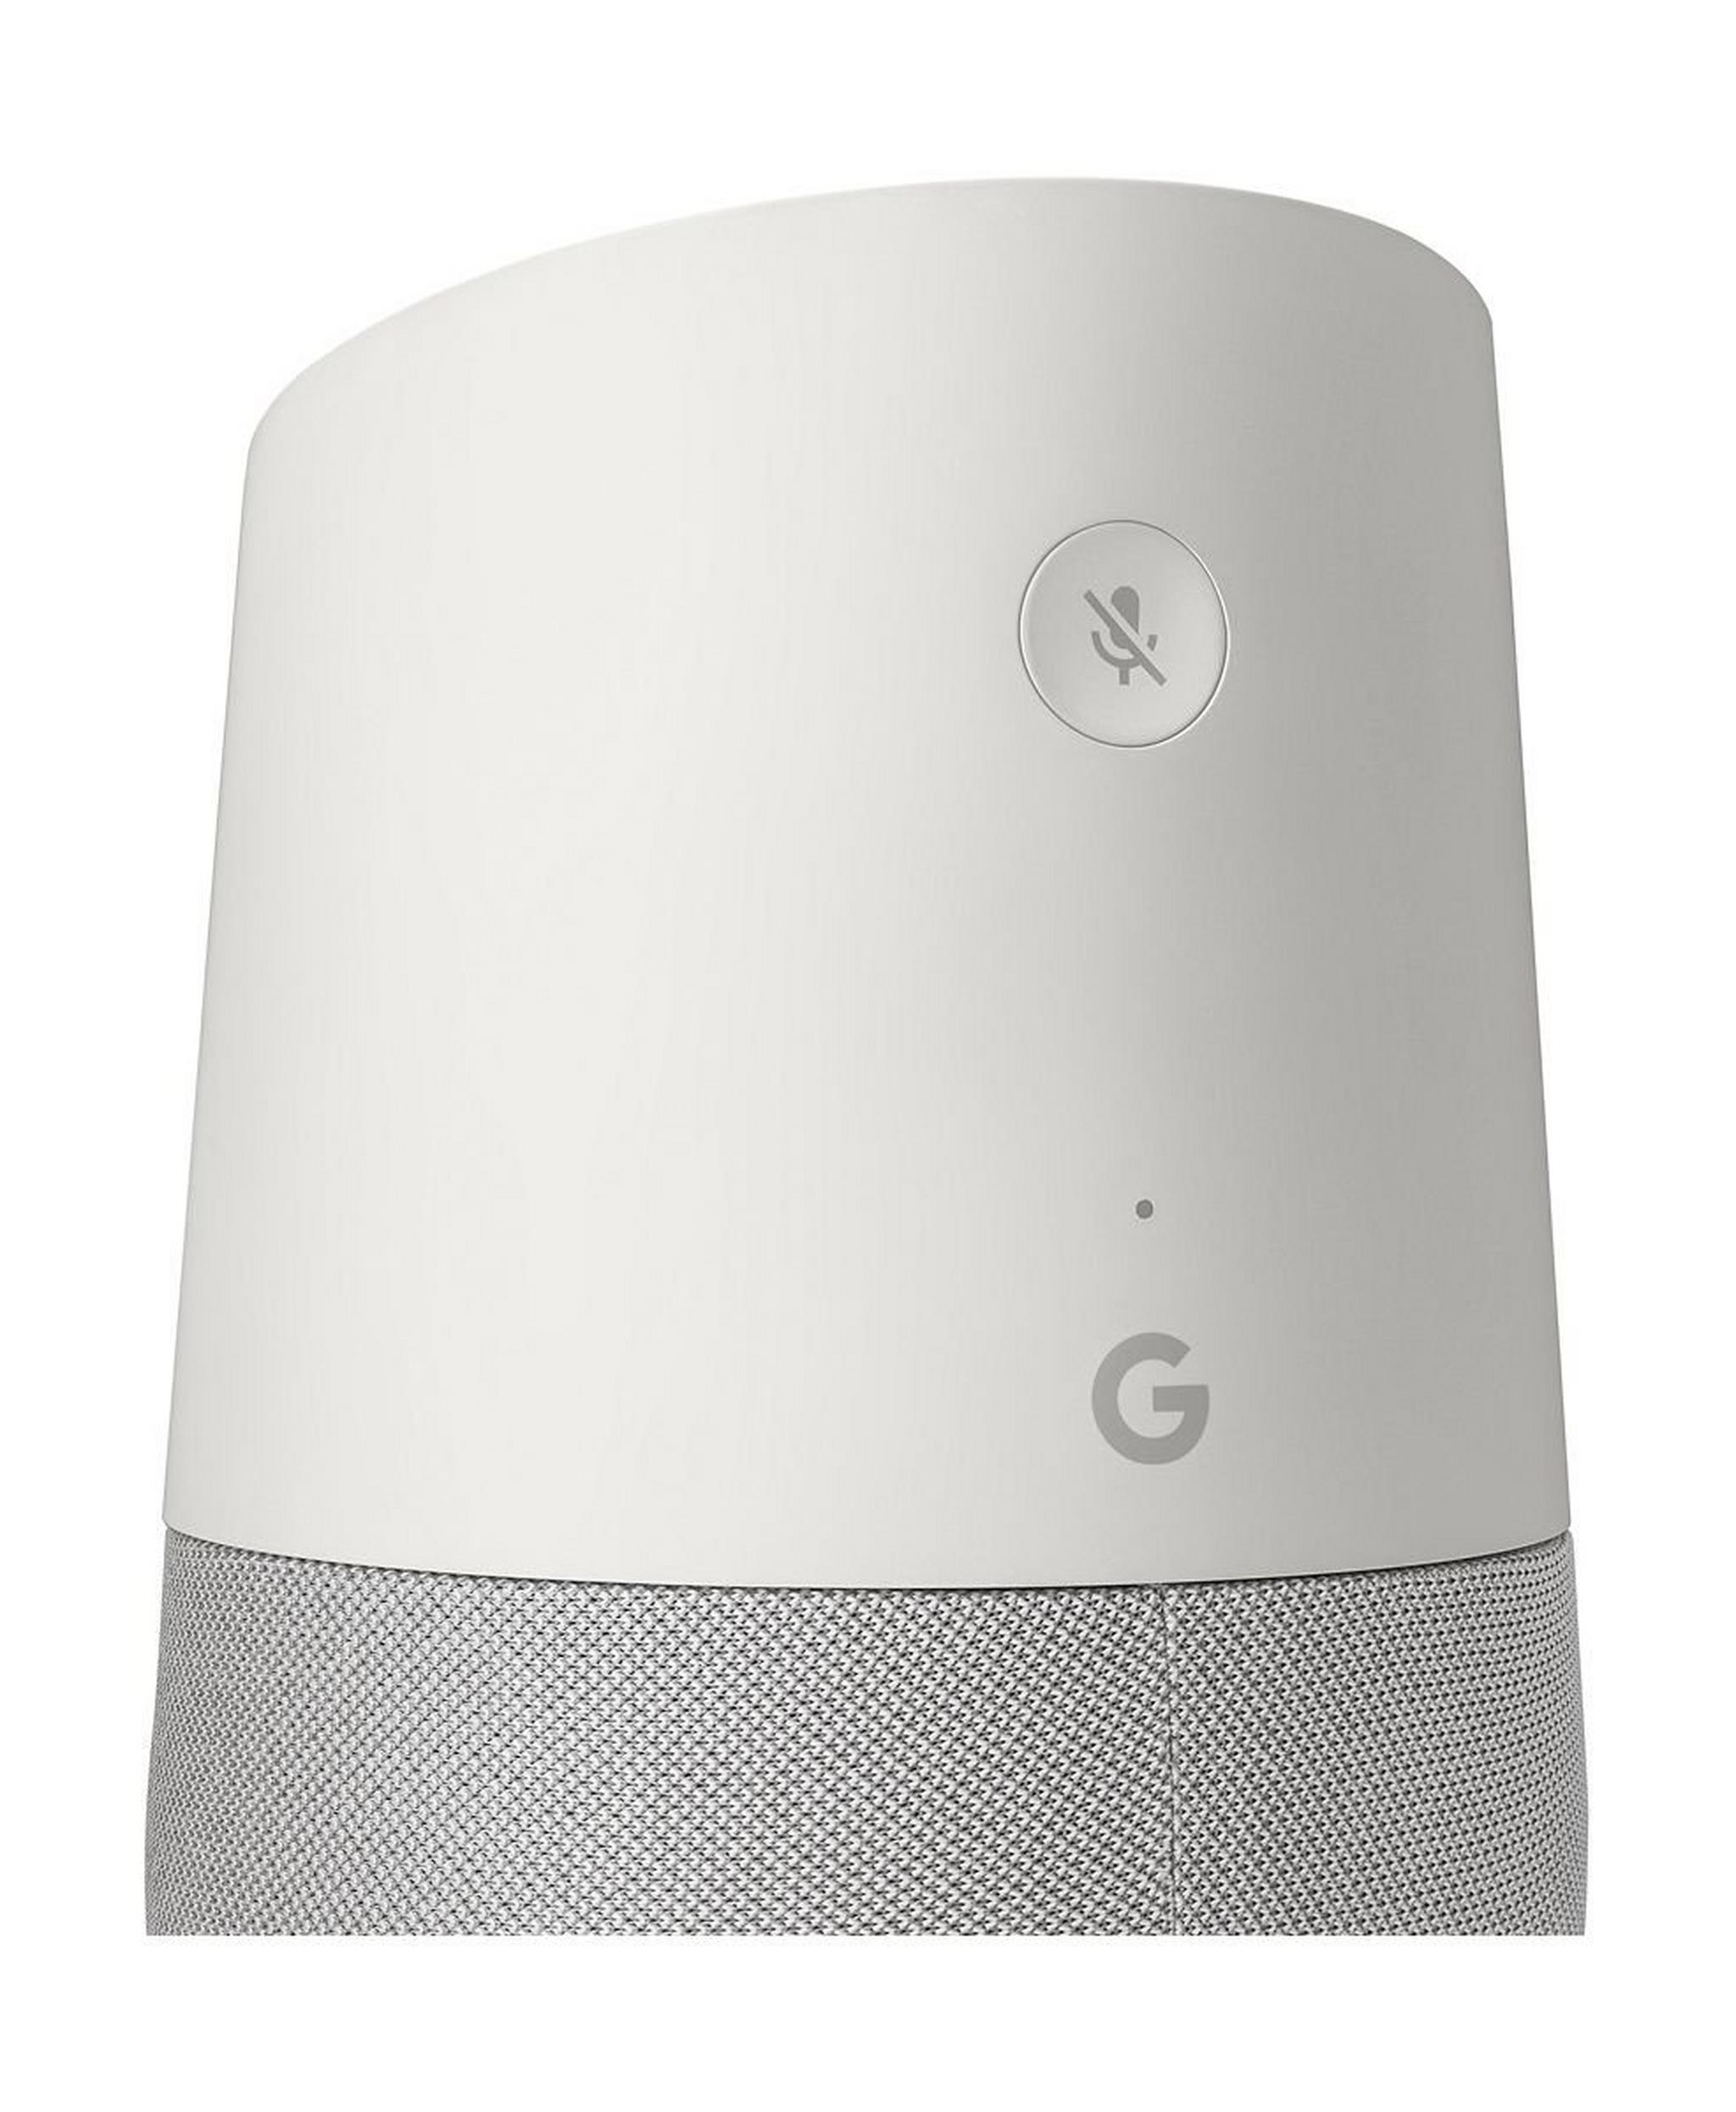 مكبر الصوت المحمول جوجل هوم – أبيض